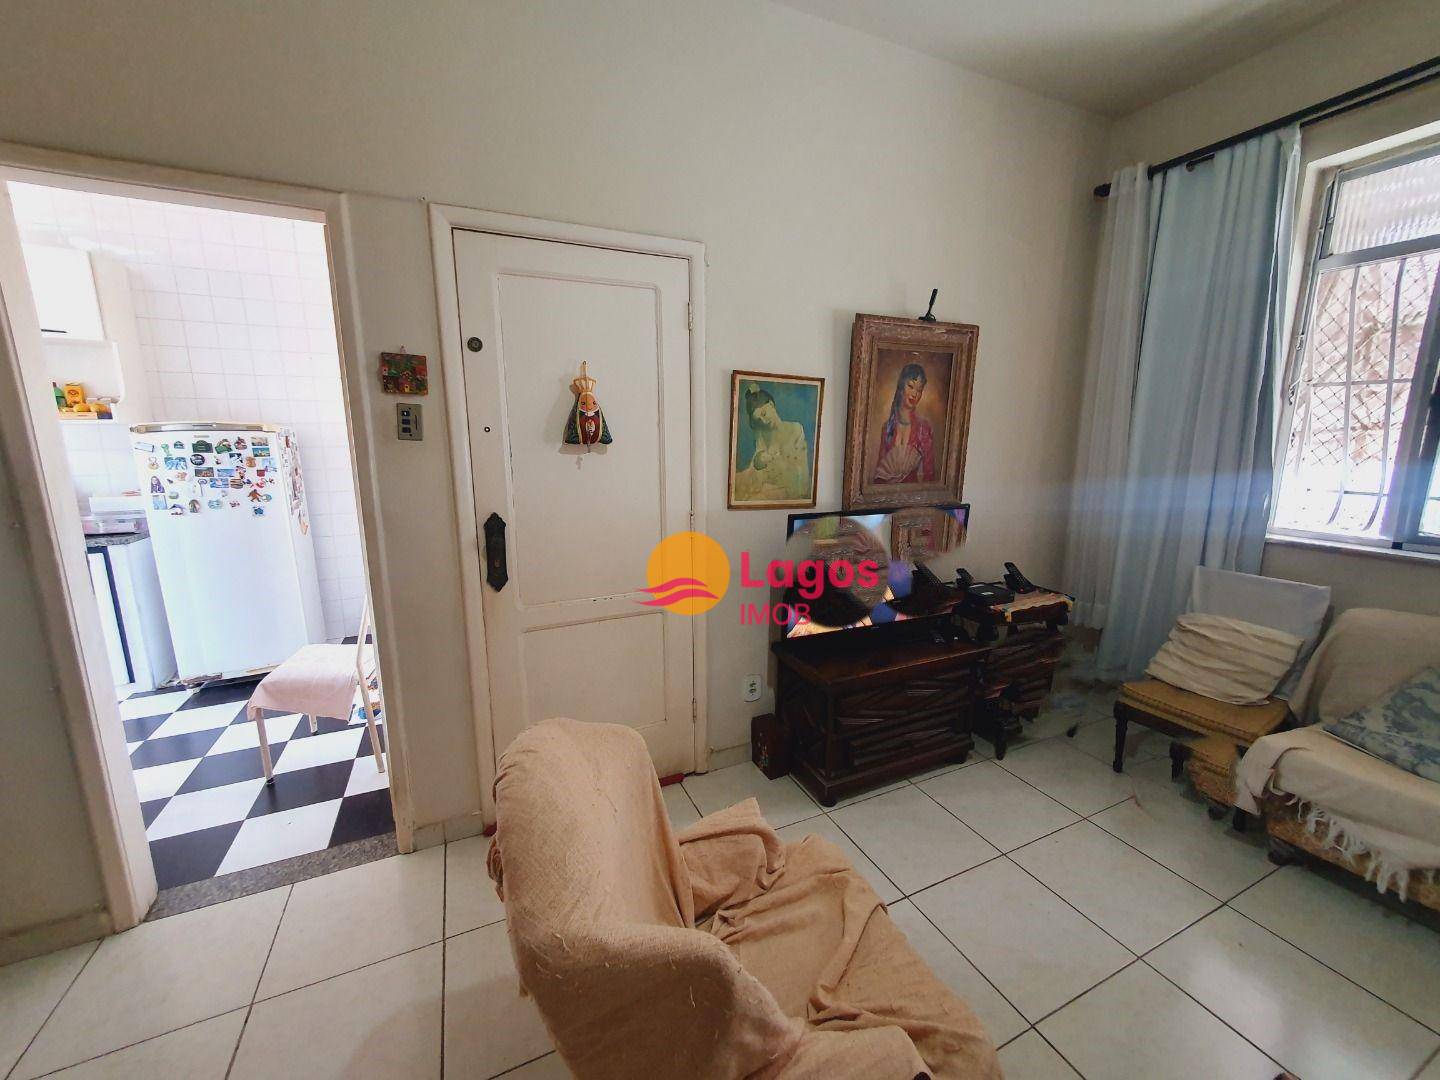 Apartamento em Santa Rosa, Niterói/RJ de 87m² 2 quartos à venda por R$ 269.000,00